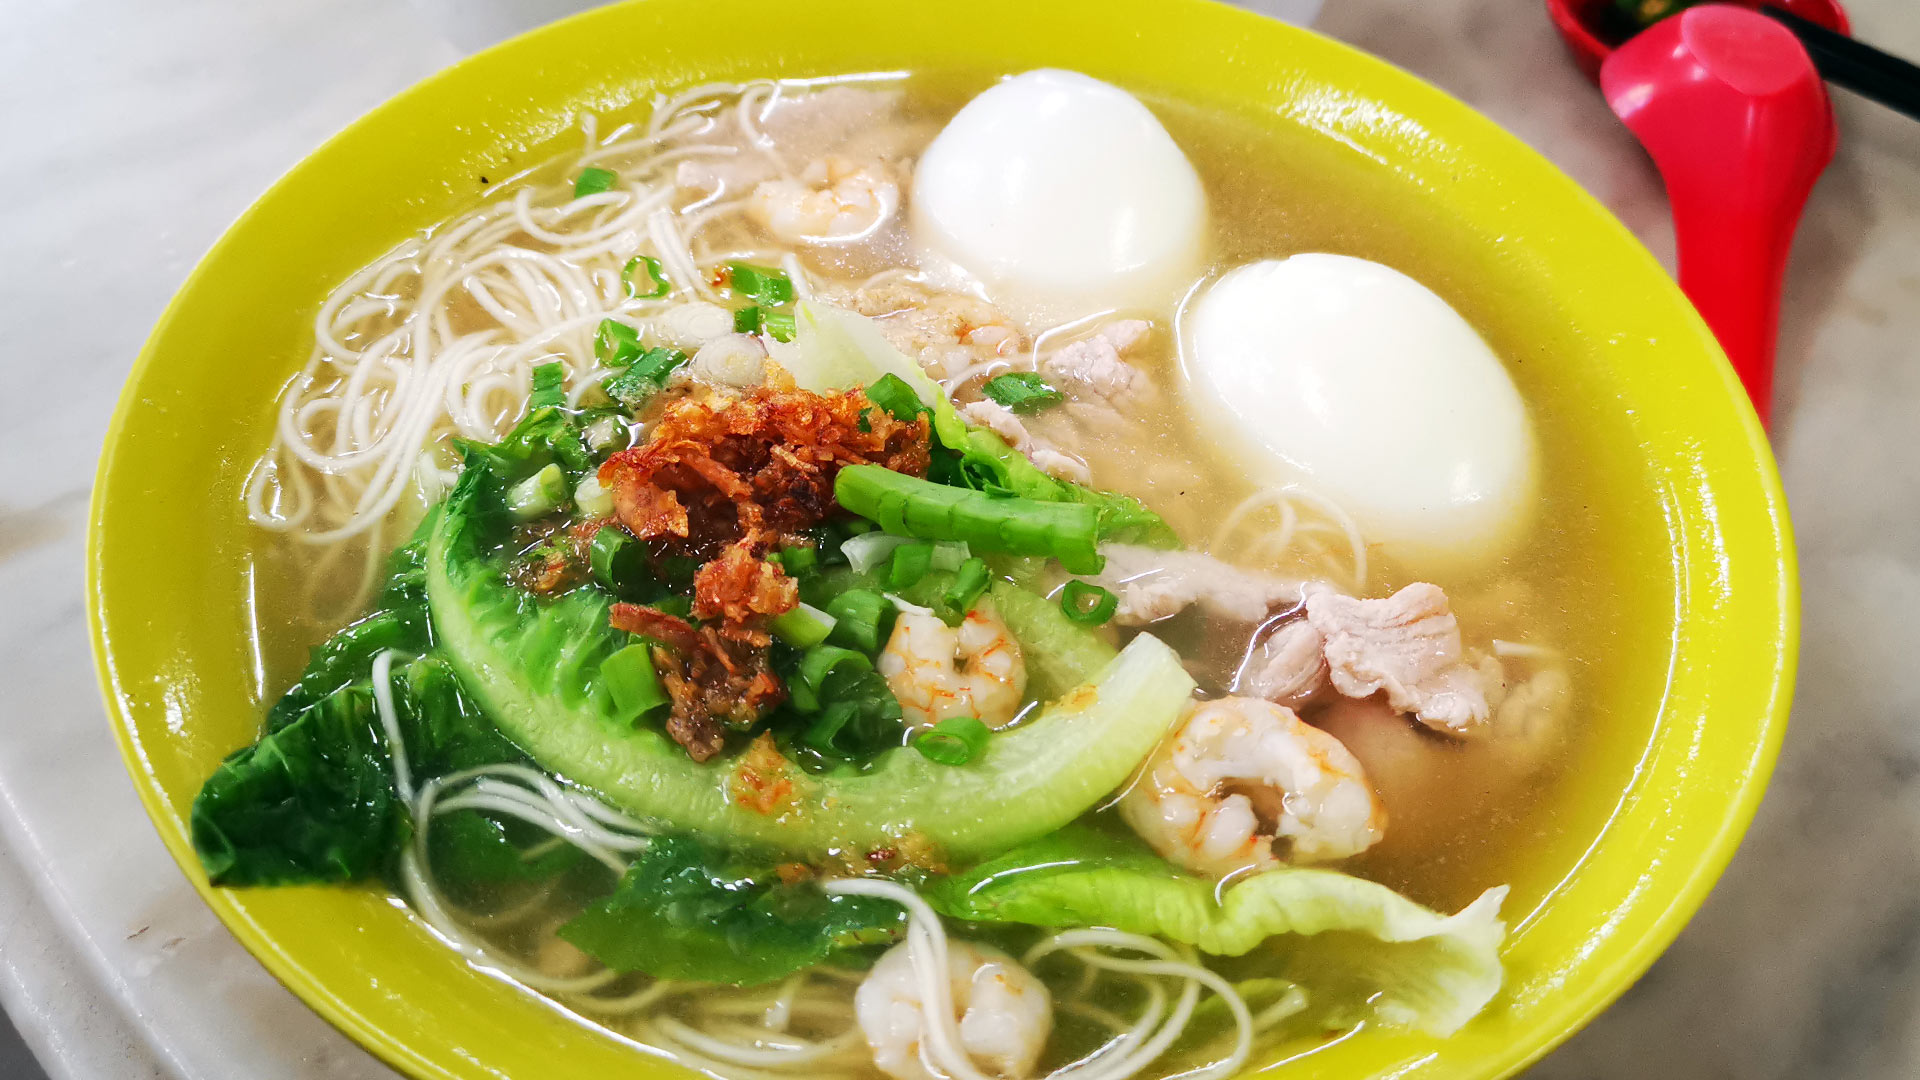 ロングライフヌードル 【长寿面】long life noodle soup（Longevity Birthday Noodles）